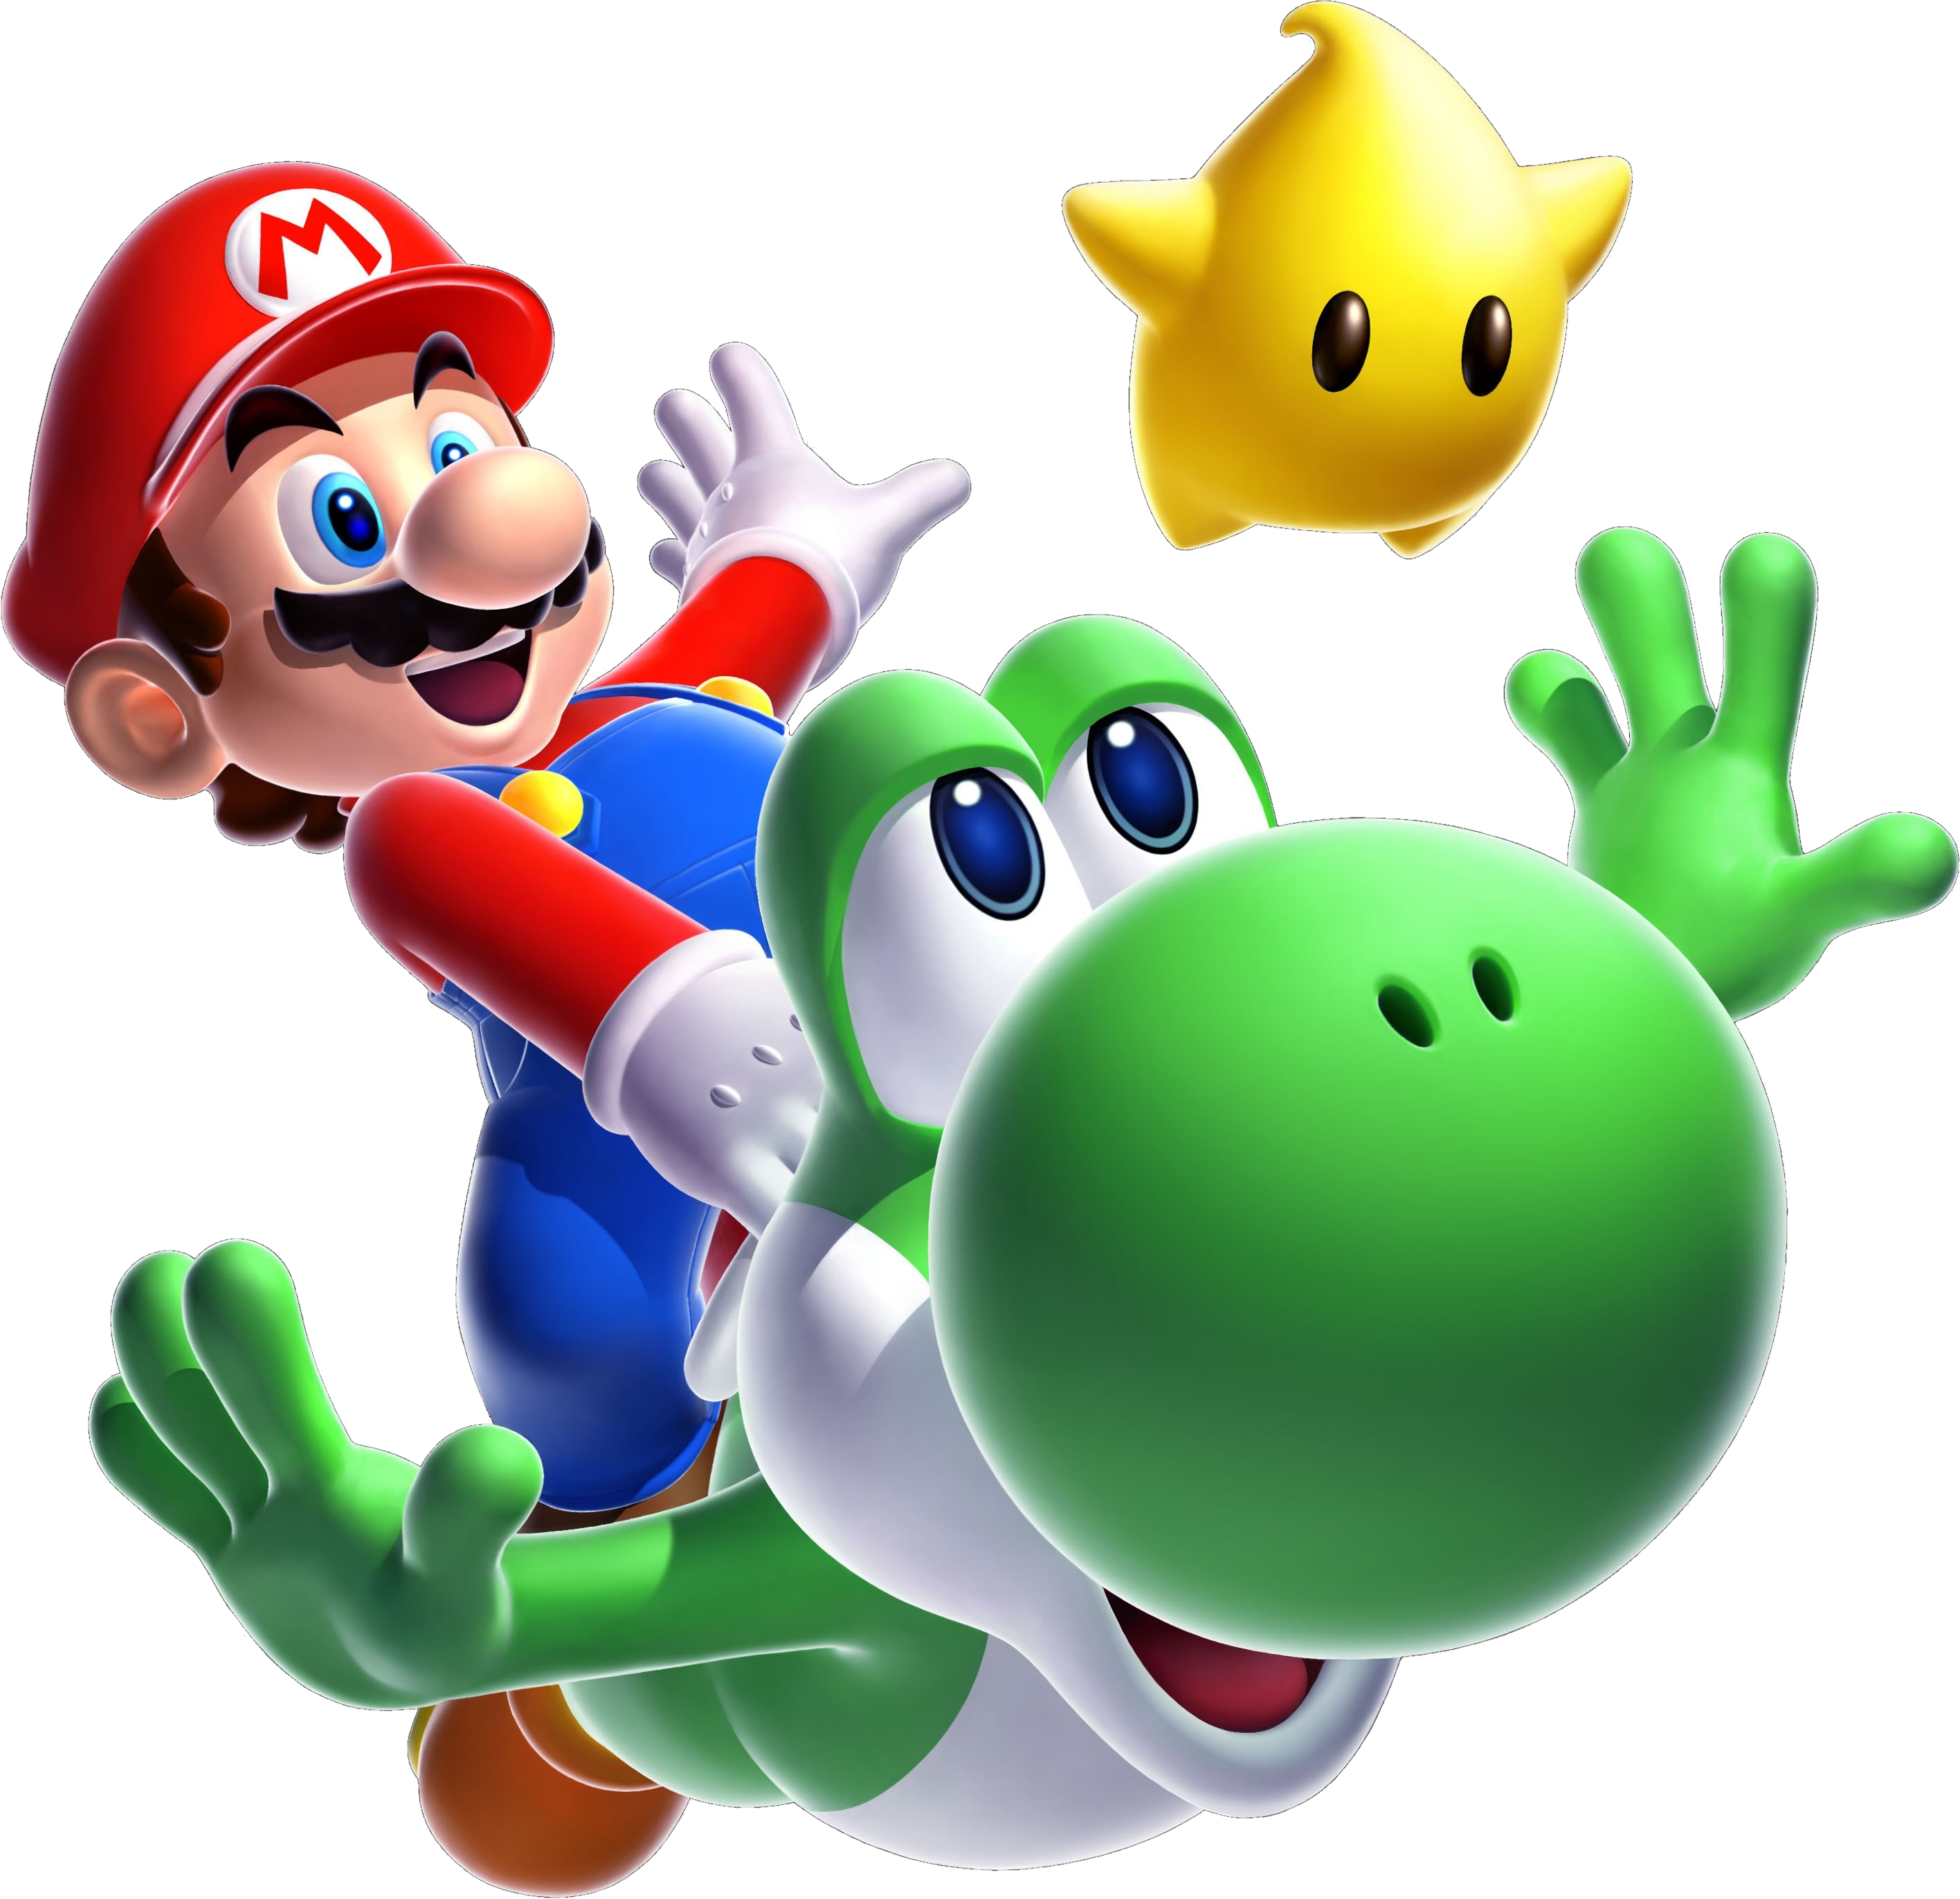 Mario and Luigi 2015 render by Banjo2015  Super mario and luigi, Mario and  luigi, Mario bros